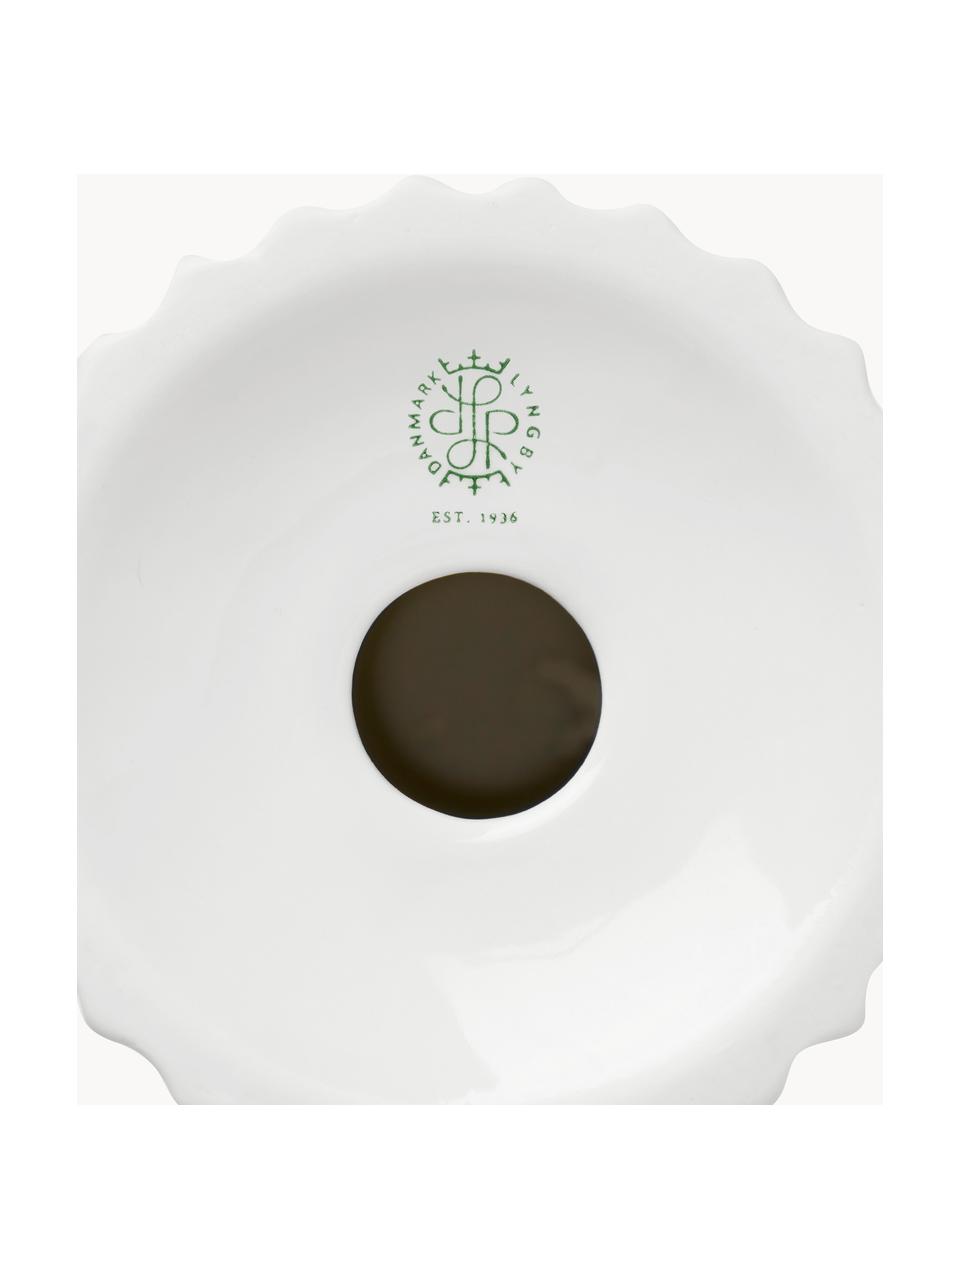 Bougeoir en porcelaine avec surface striée Tura, Porcelaine, Blanc, Ø 8 x haut. 13 cm